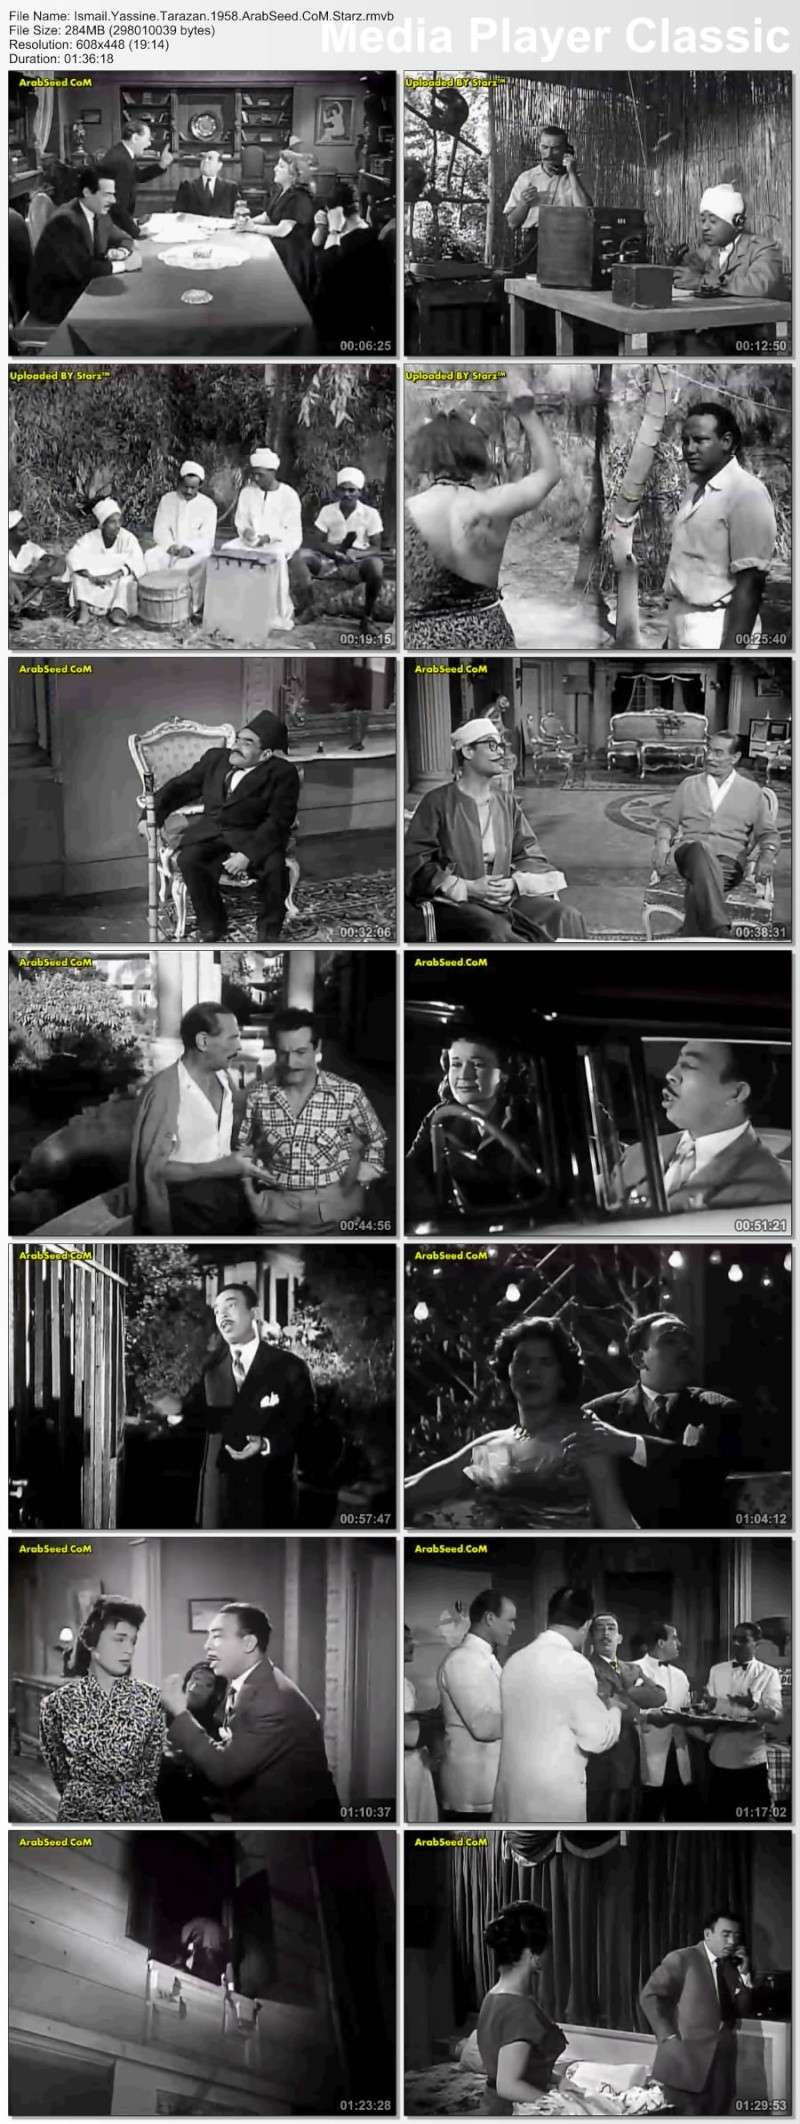 الفيلم العربي : اسماعيل يس طرزان 1958 :: نسخة DVDRip تحميل مباشر على اكثر من سيرفر Thumb137